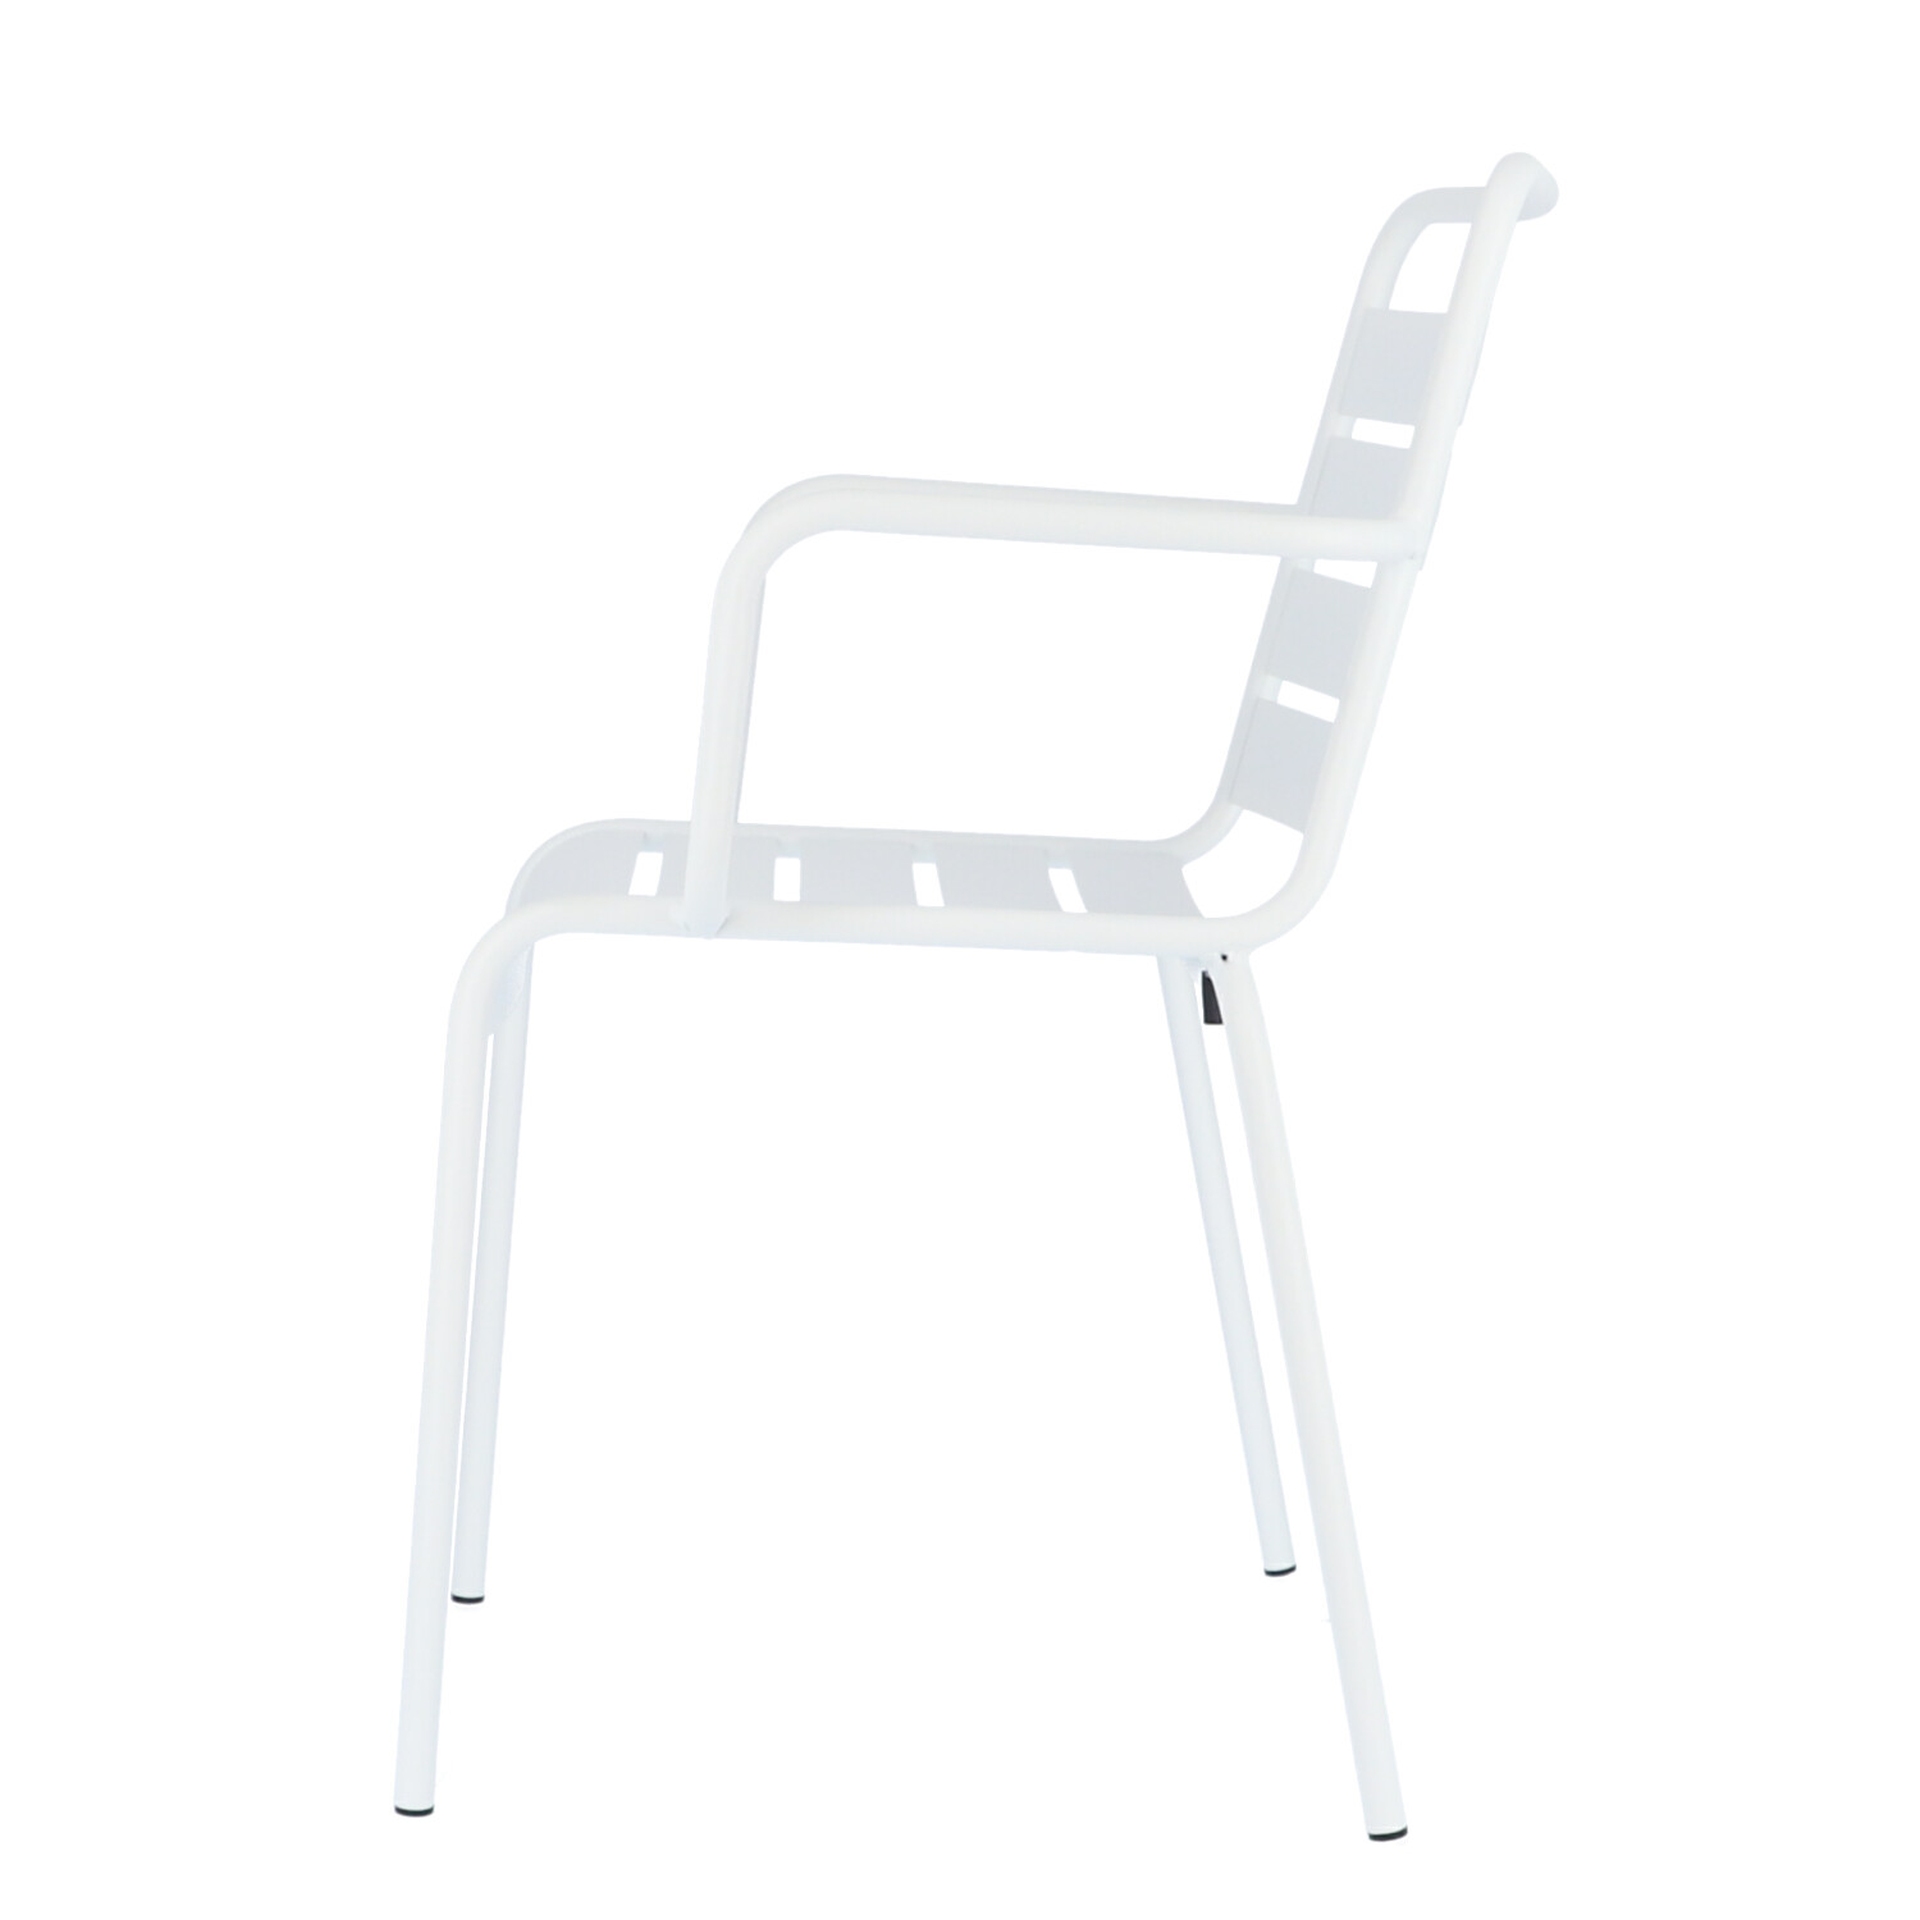 Der moderne Stapelsessel Mya wurde aus Aluminium gefertigt und hat einen weißen Farbton. Designet wurde der Sessel von der Marke Jan Kurtz.